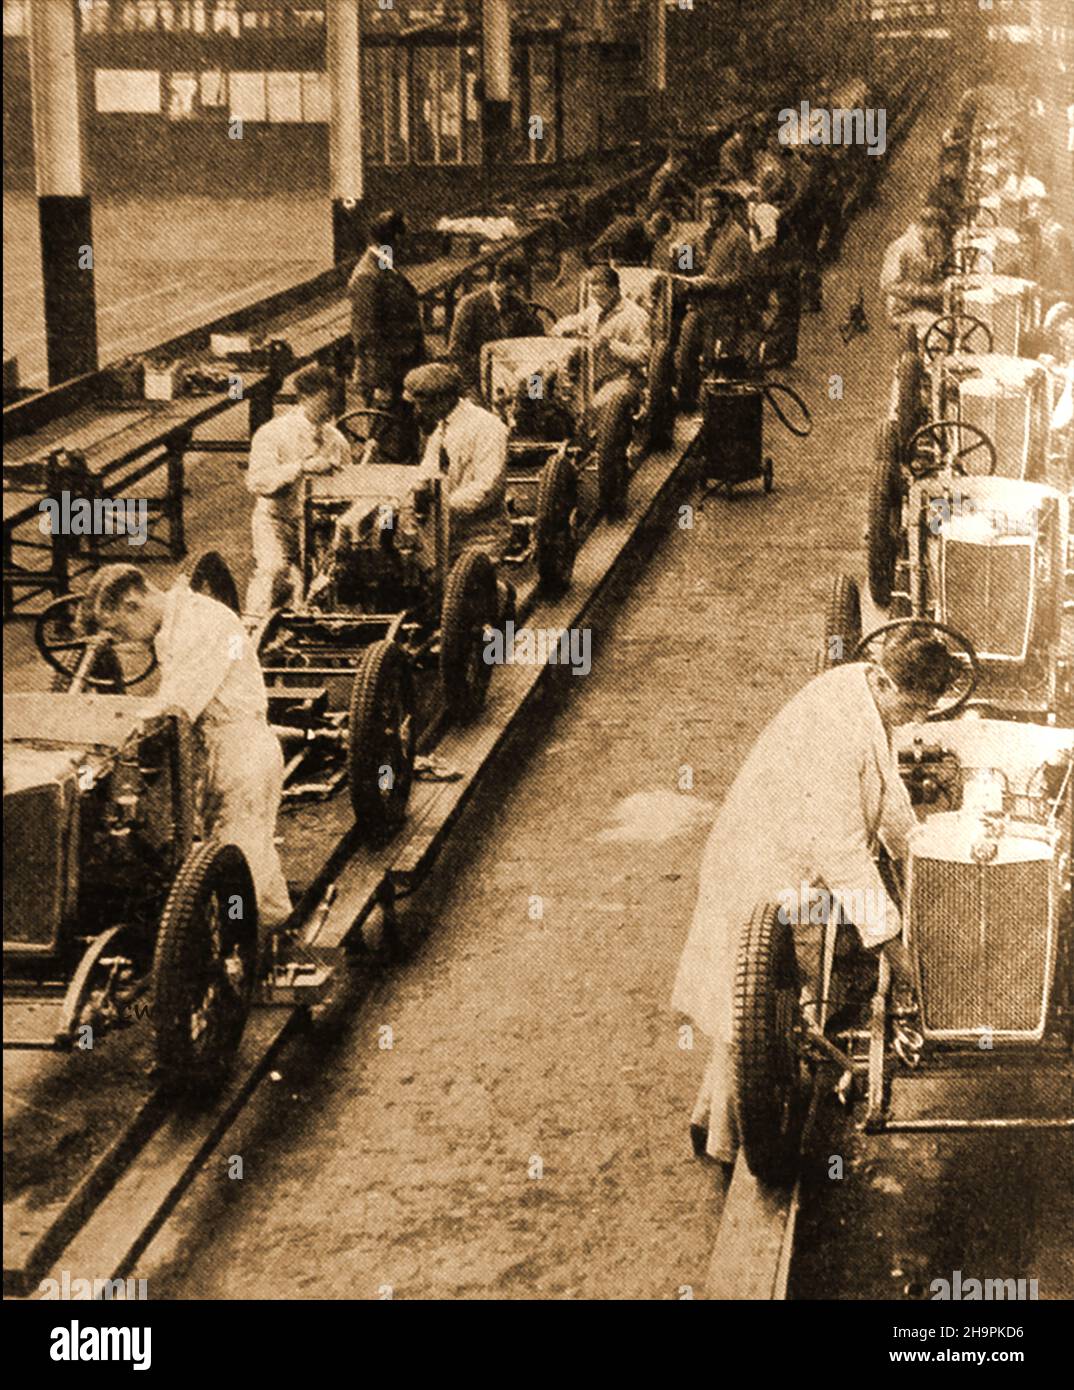 Eine Produktionslinienszene in den alten MG-Produktionswerken, MG steht für Morris Garagen - die Initialen sind eine Hommage an den Automobilhersteller William Morris. Morris, der die Garagen besaß, in denen der Gründer von MG Cecil Kimber ursprünglich arbeitete. Stockfoto